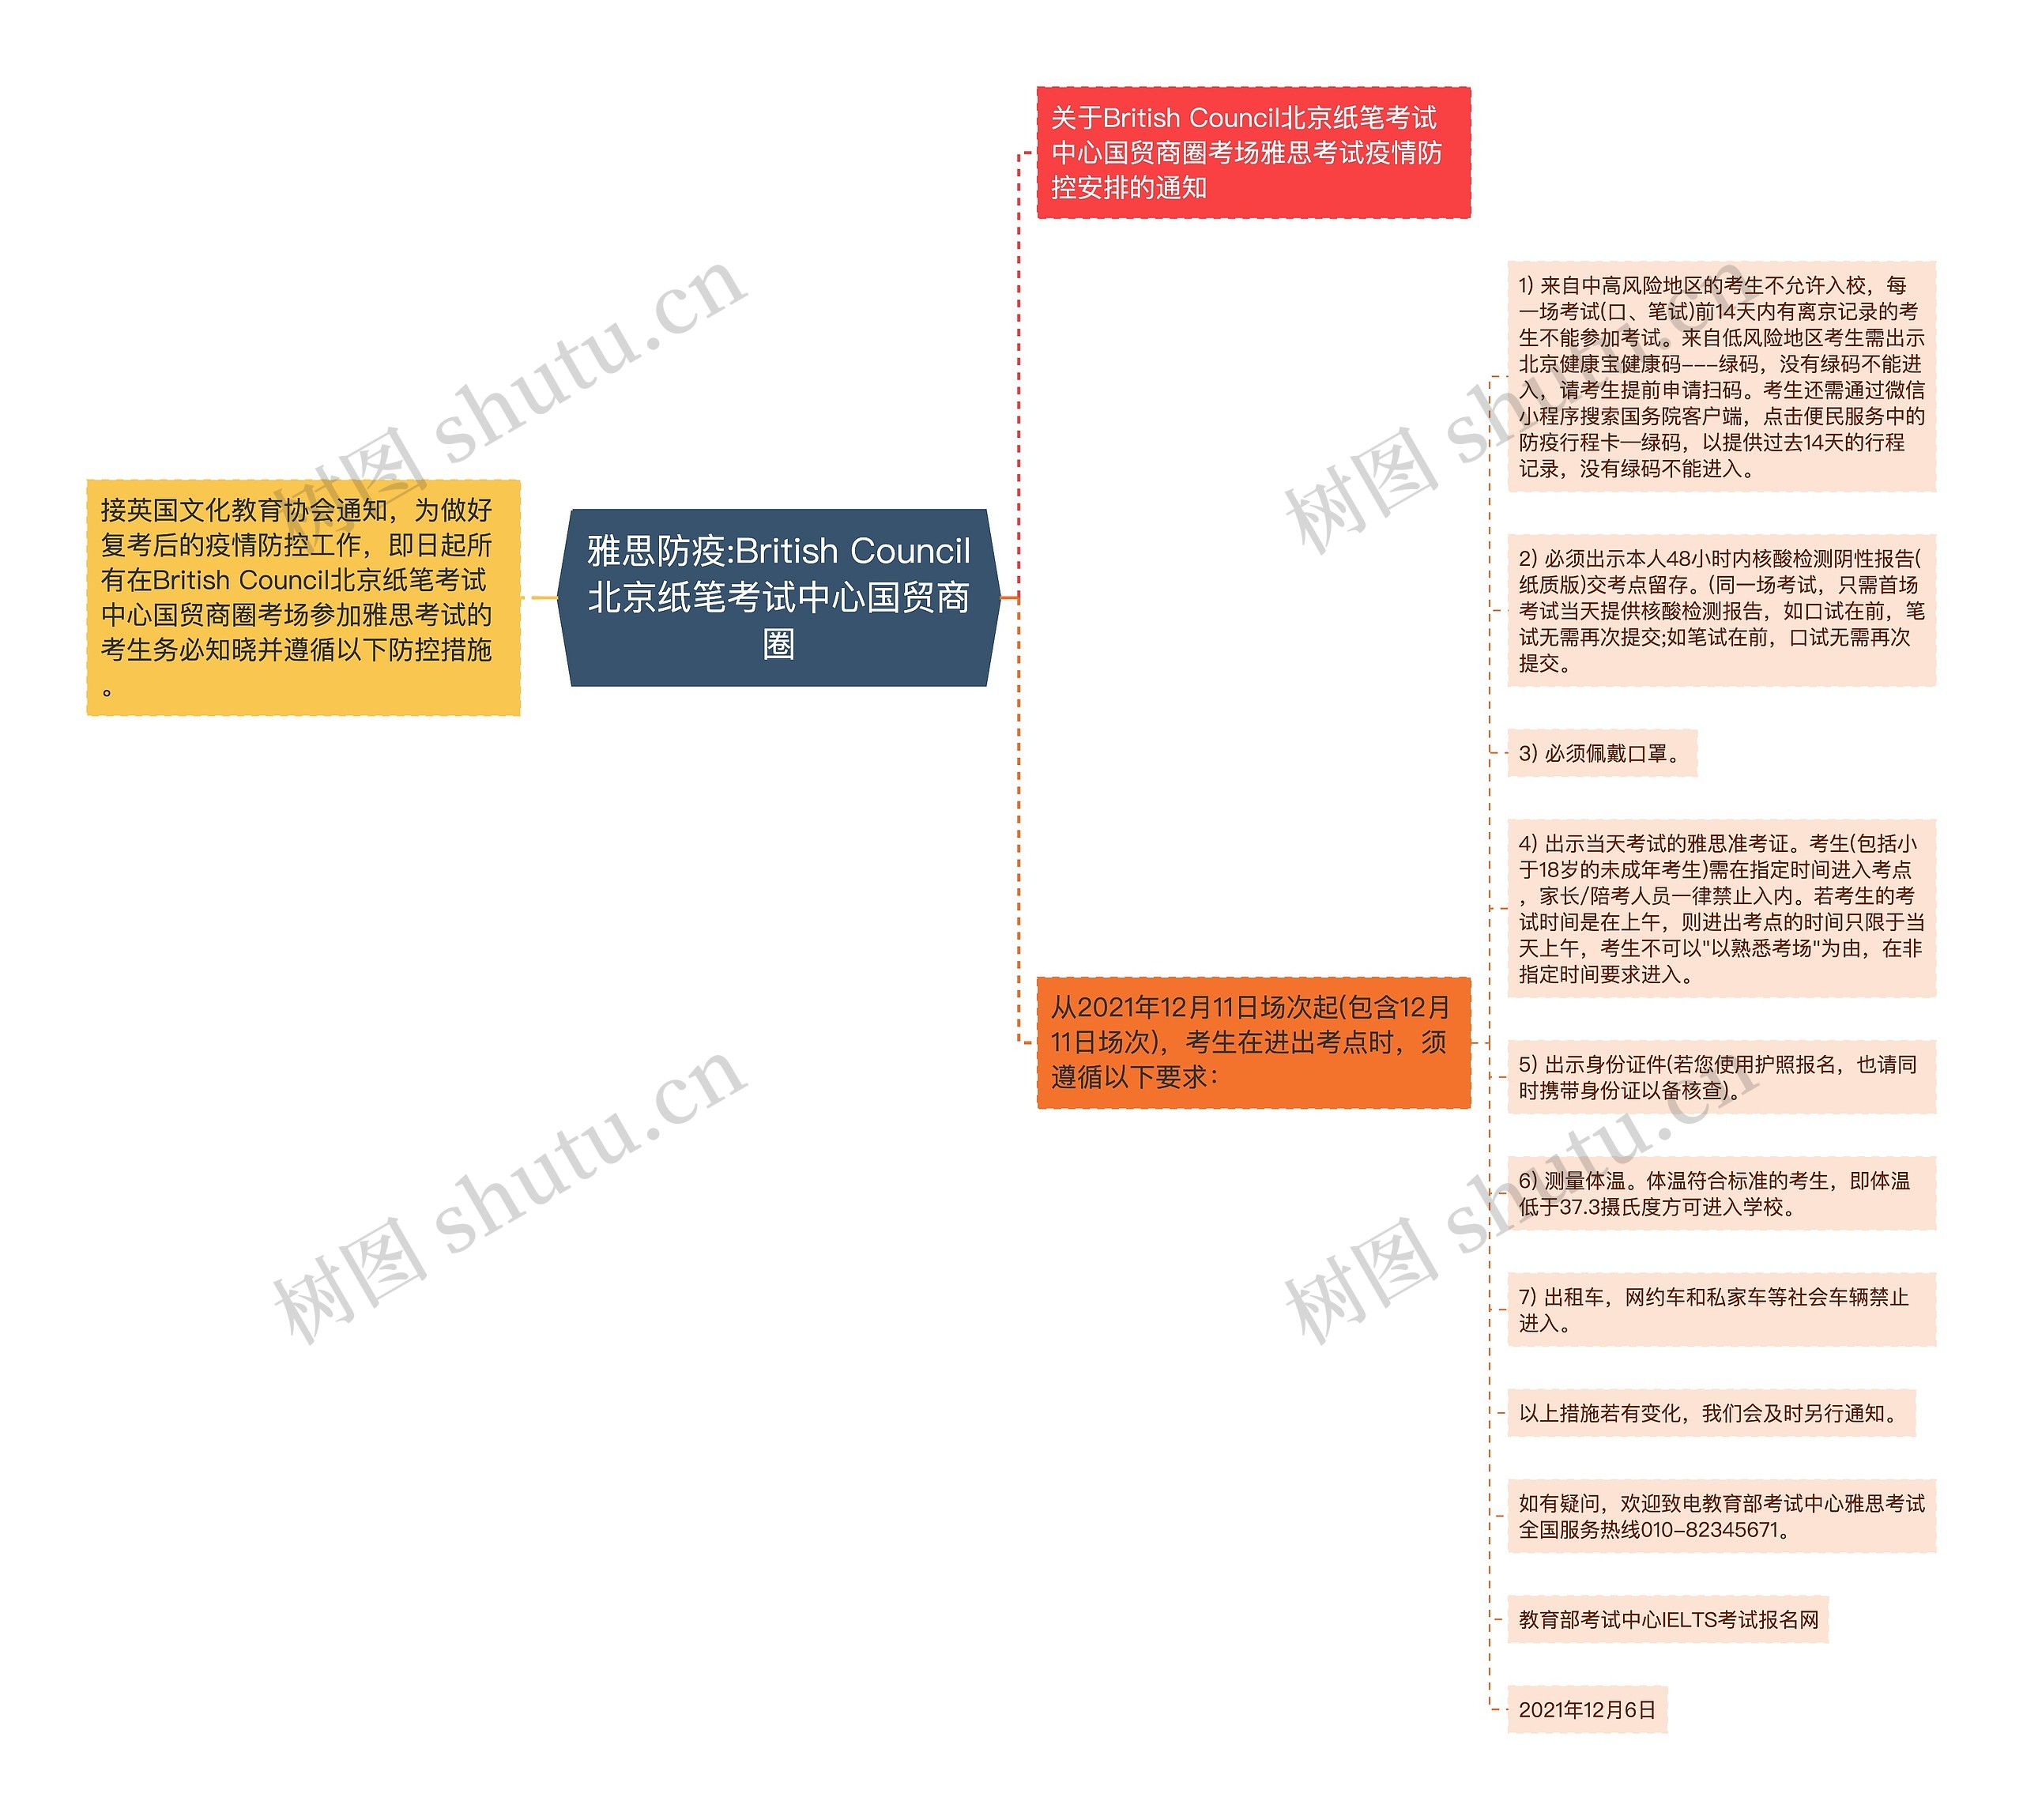 雅思防疫:British Council北京纸笔考试中心国贸商圈